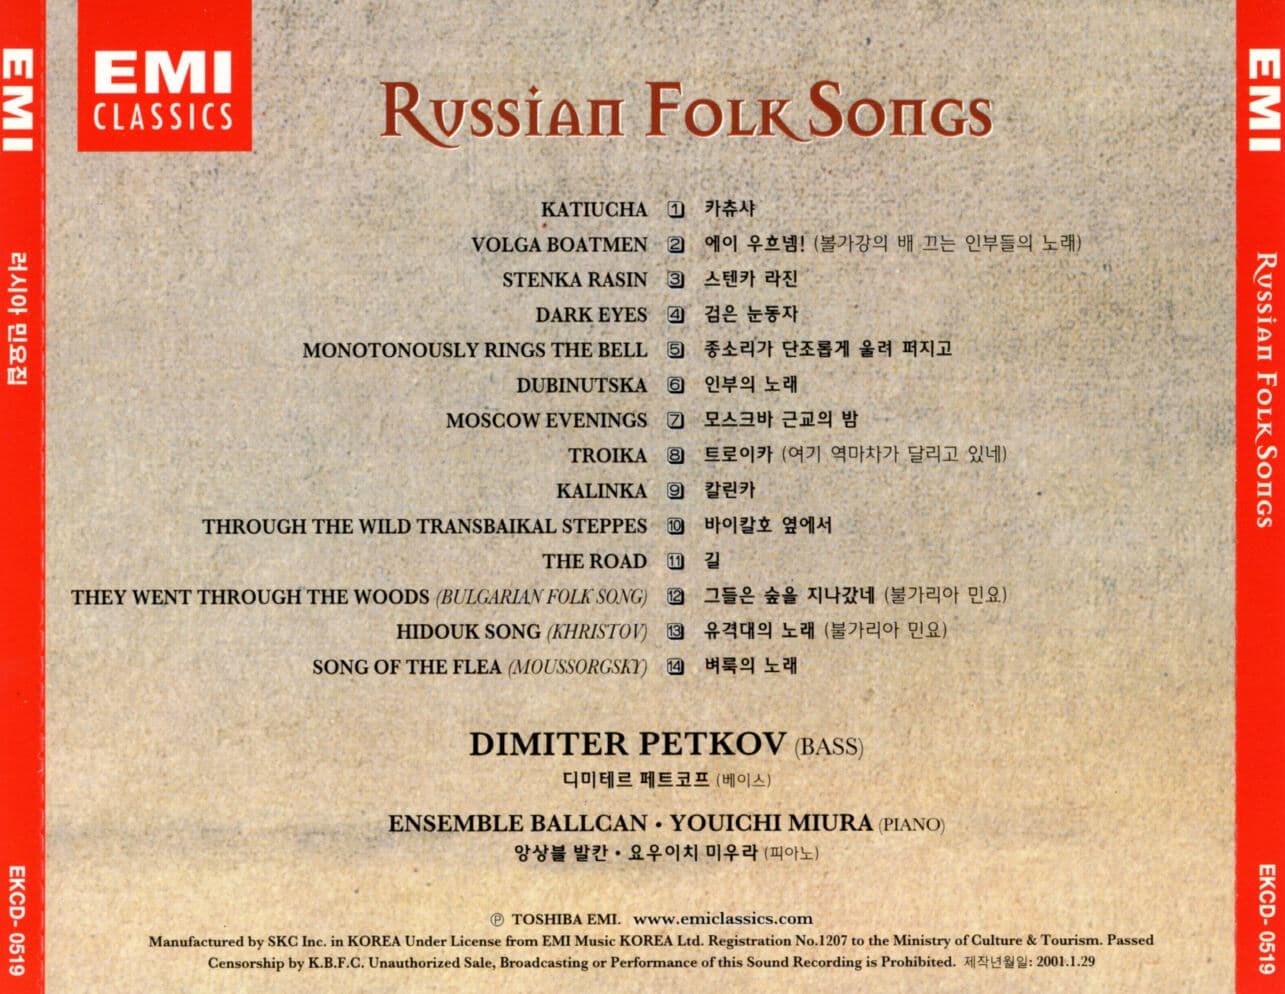 러시아 민요집 - Russian Folk Songs 